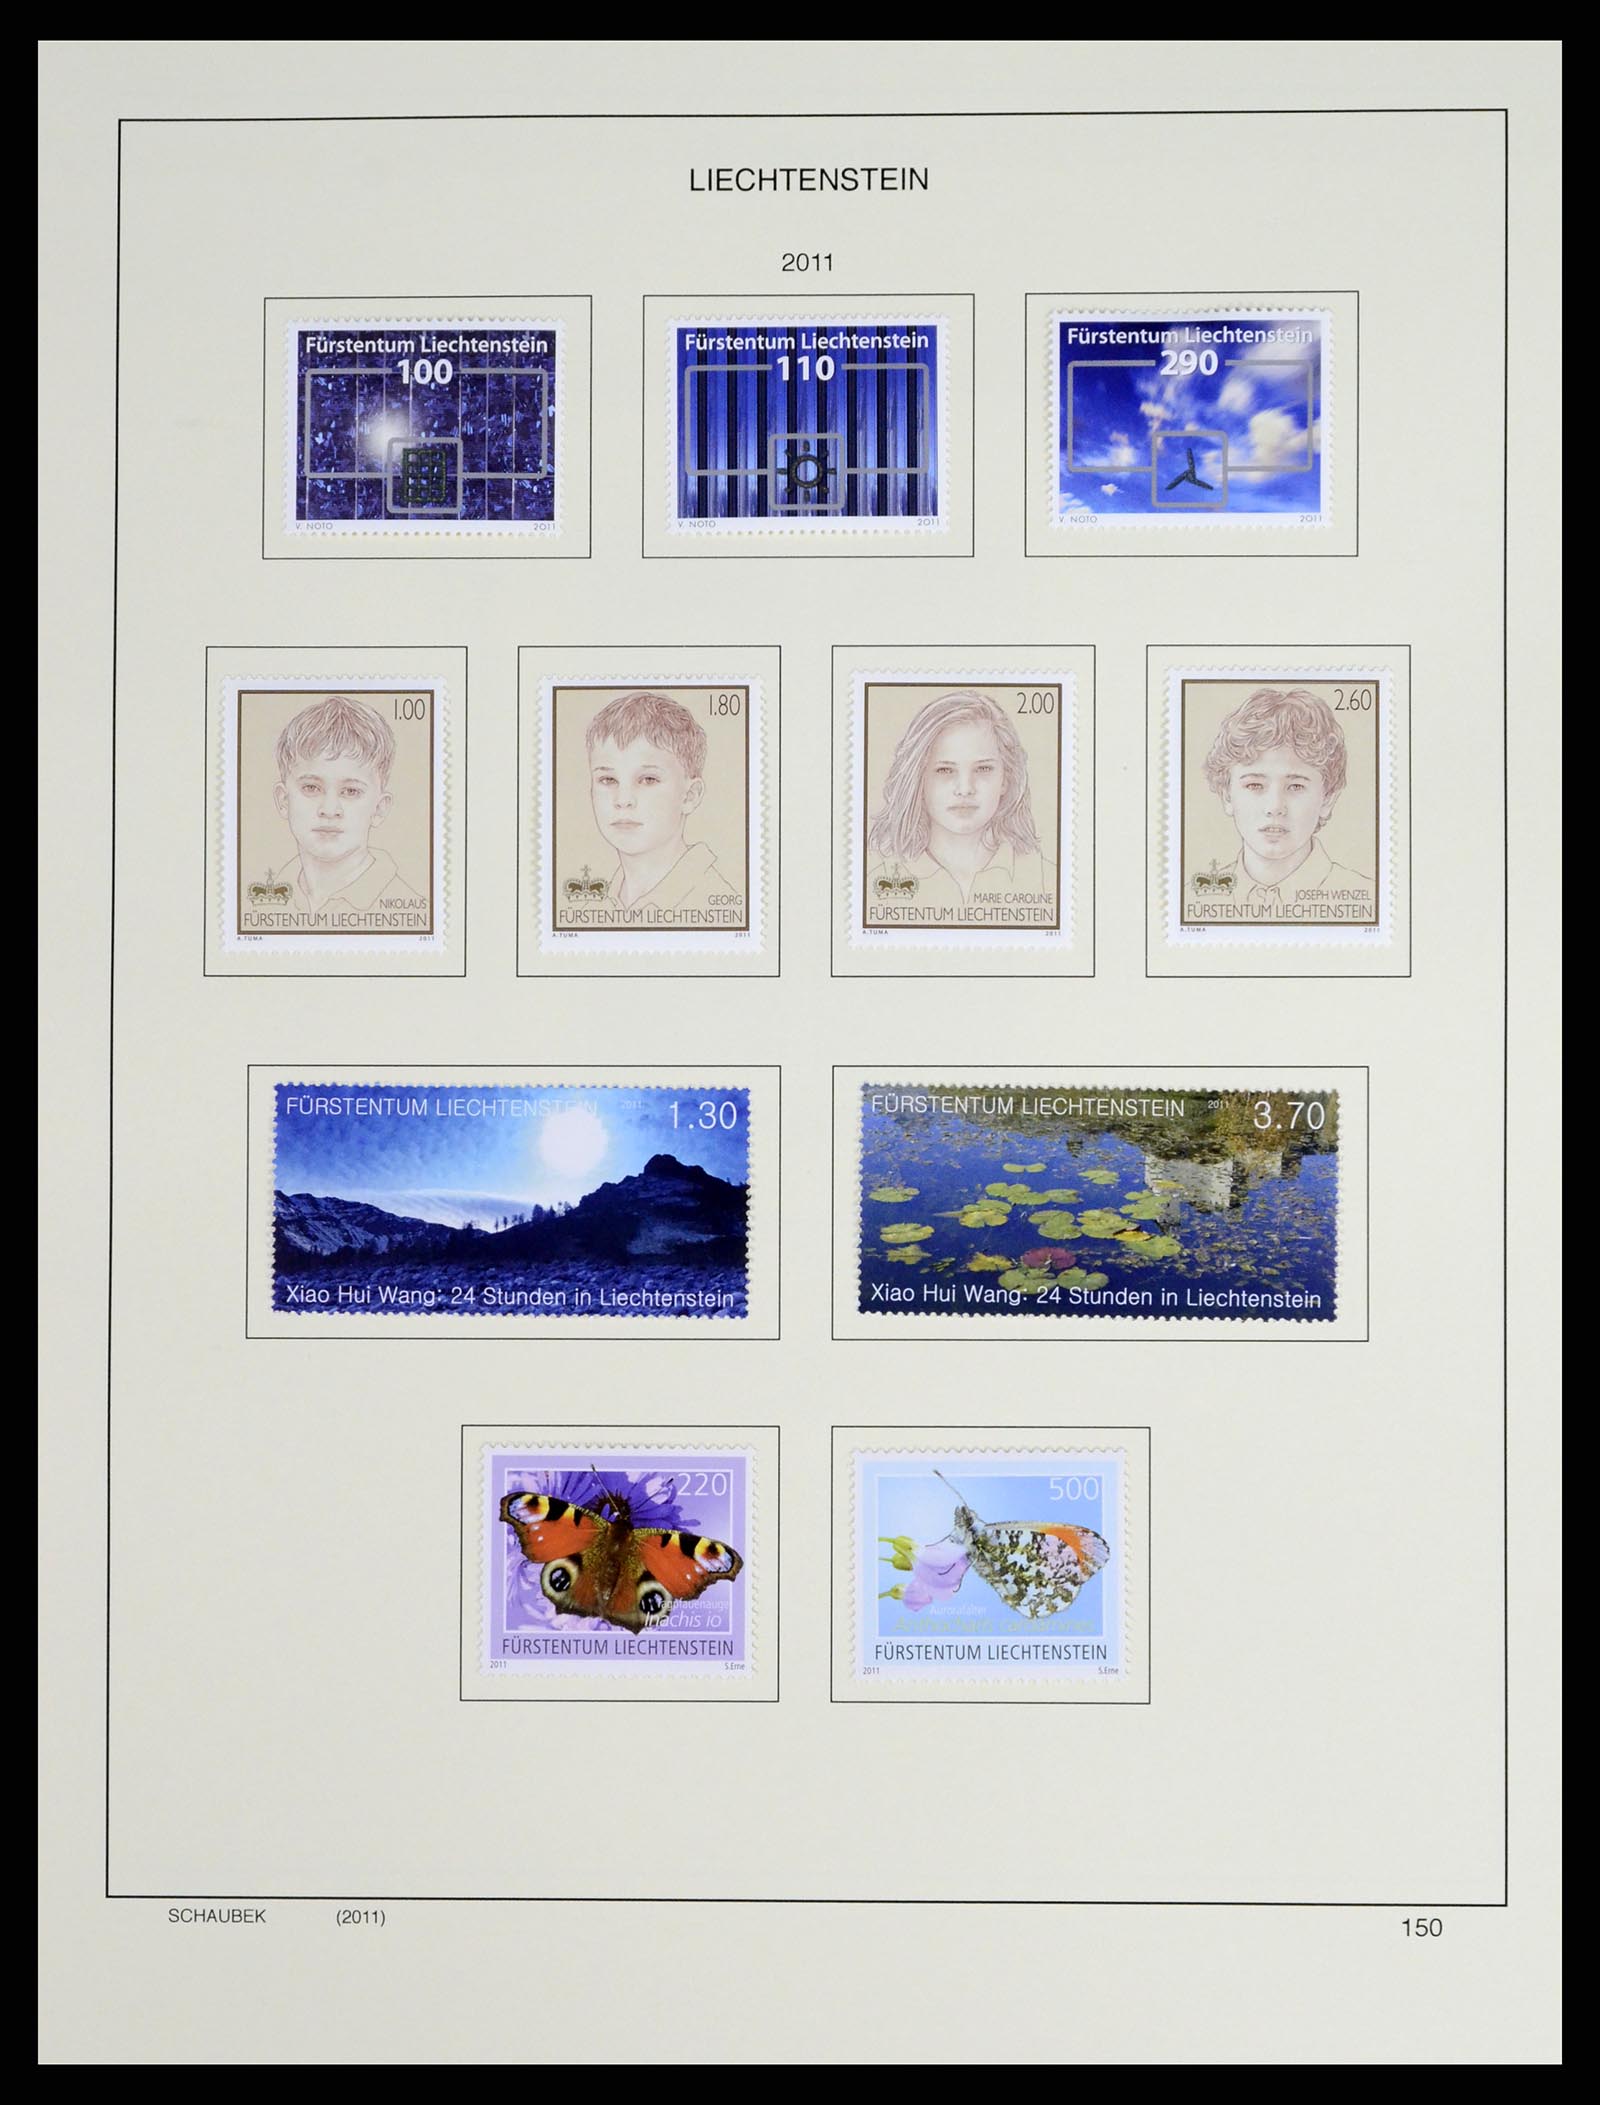 37547 176 - Stamp collection 37547 Liechtenstein 1912-2011.